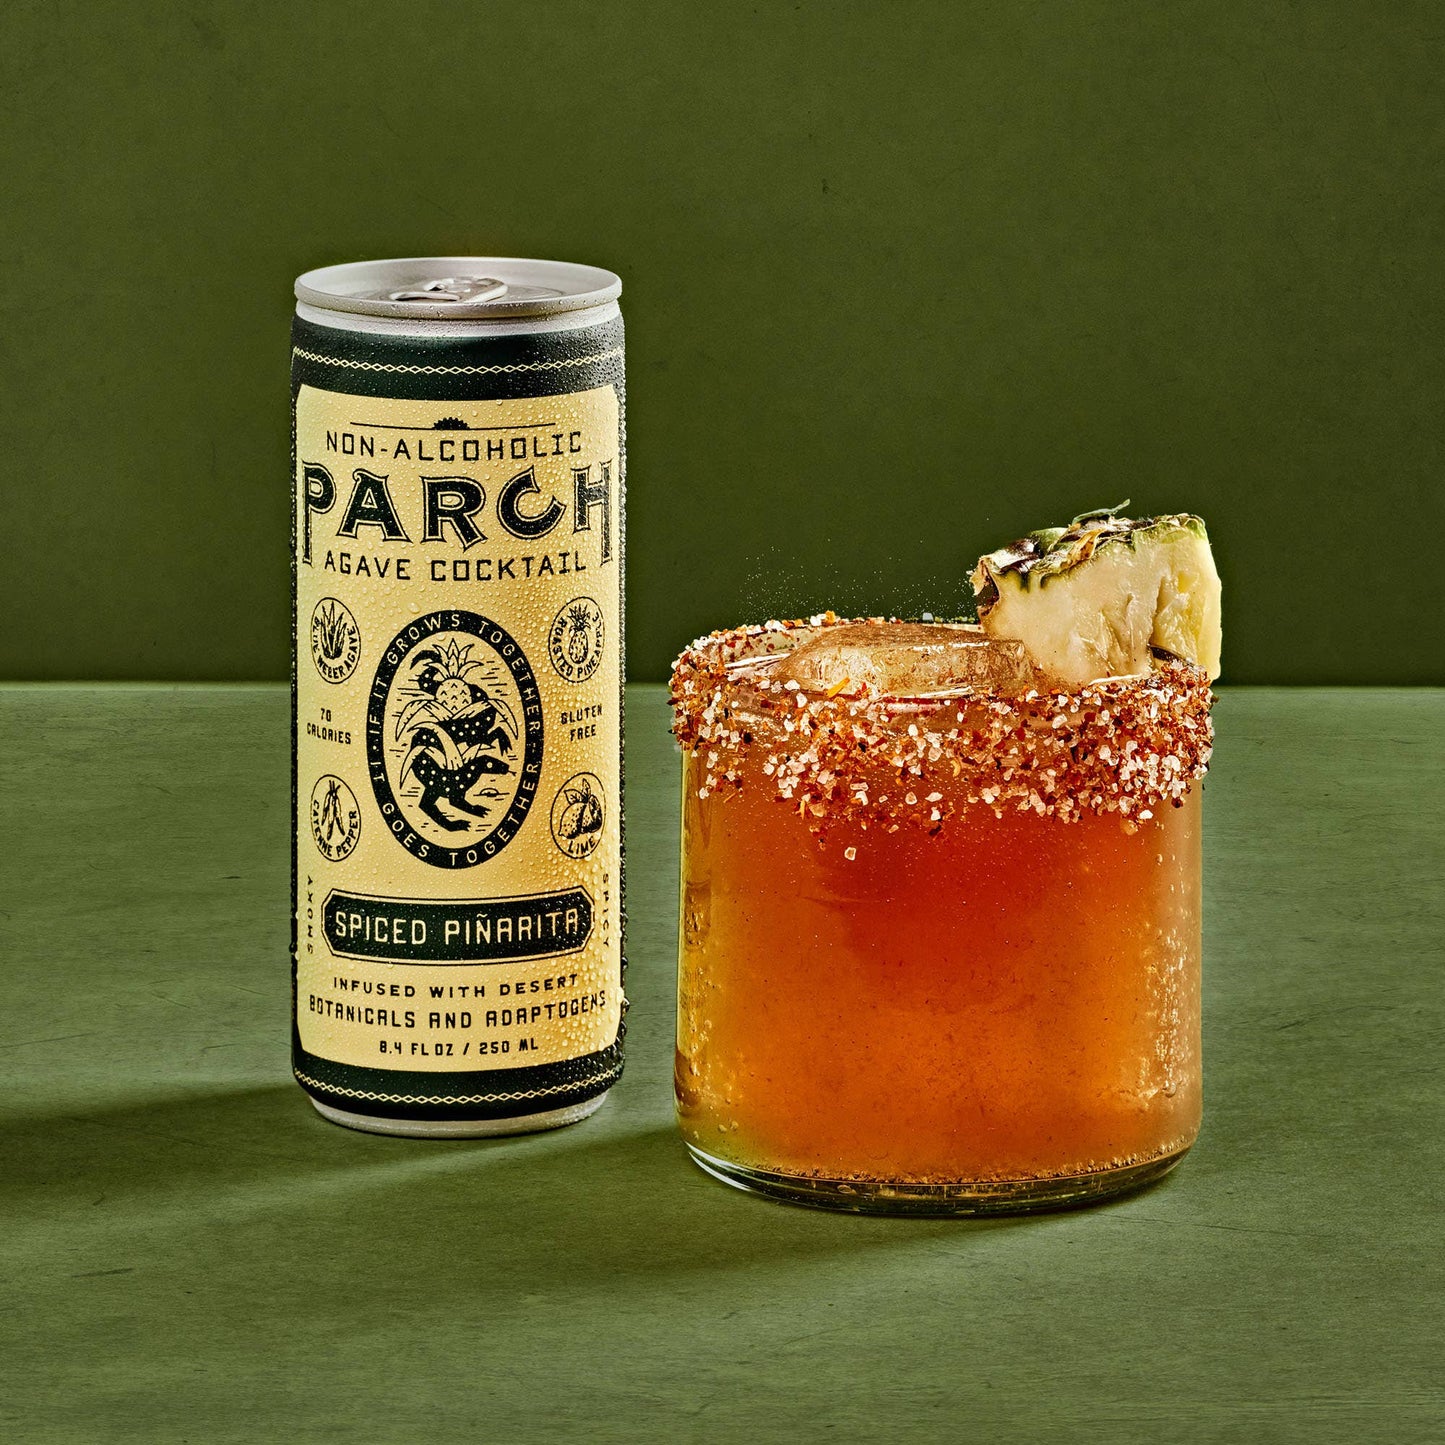 PARCH - Spiced Piñarita Non-Alcoholic Agave Cocktail